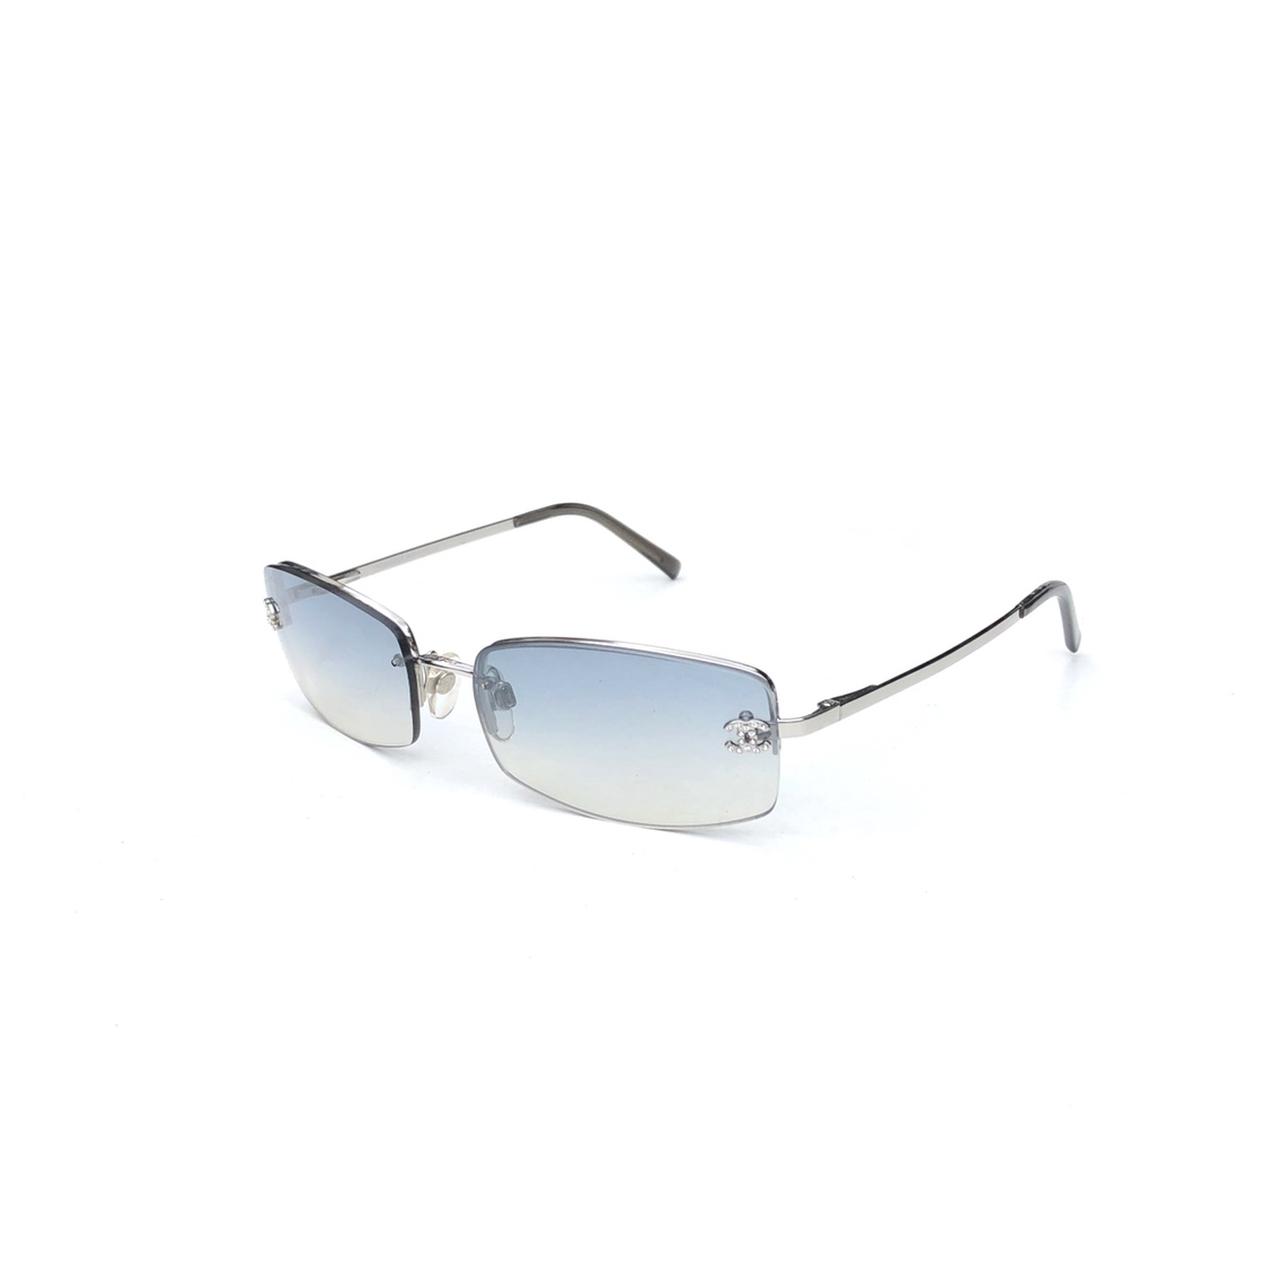 Chanel Men's Sunglasses - Silver